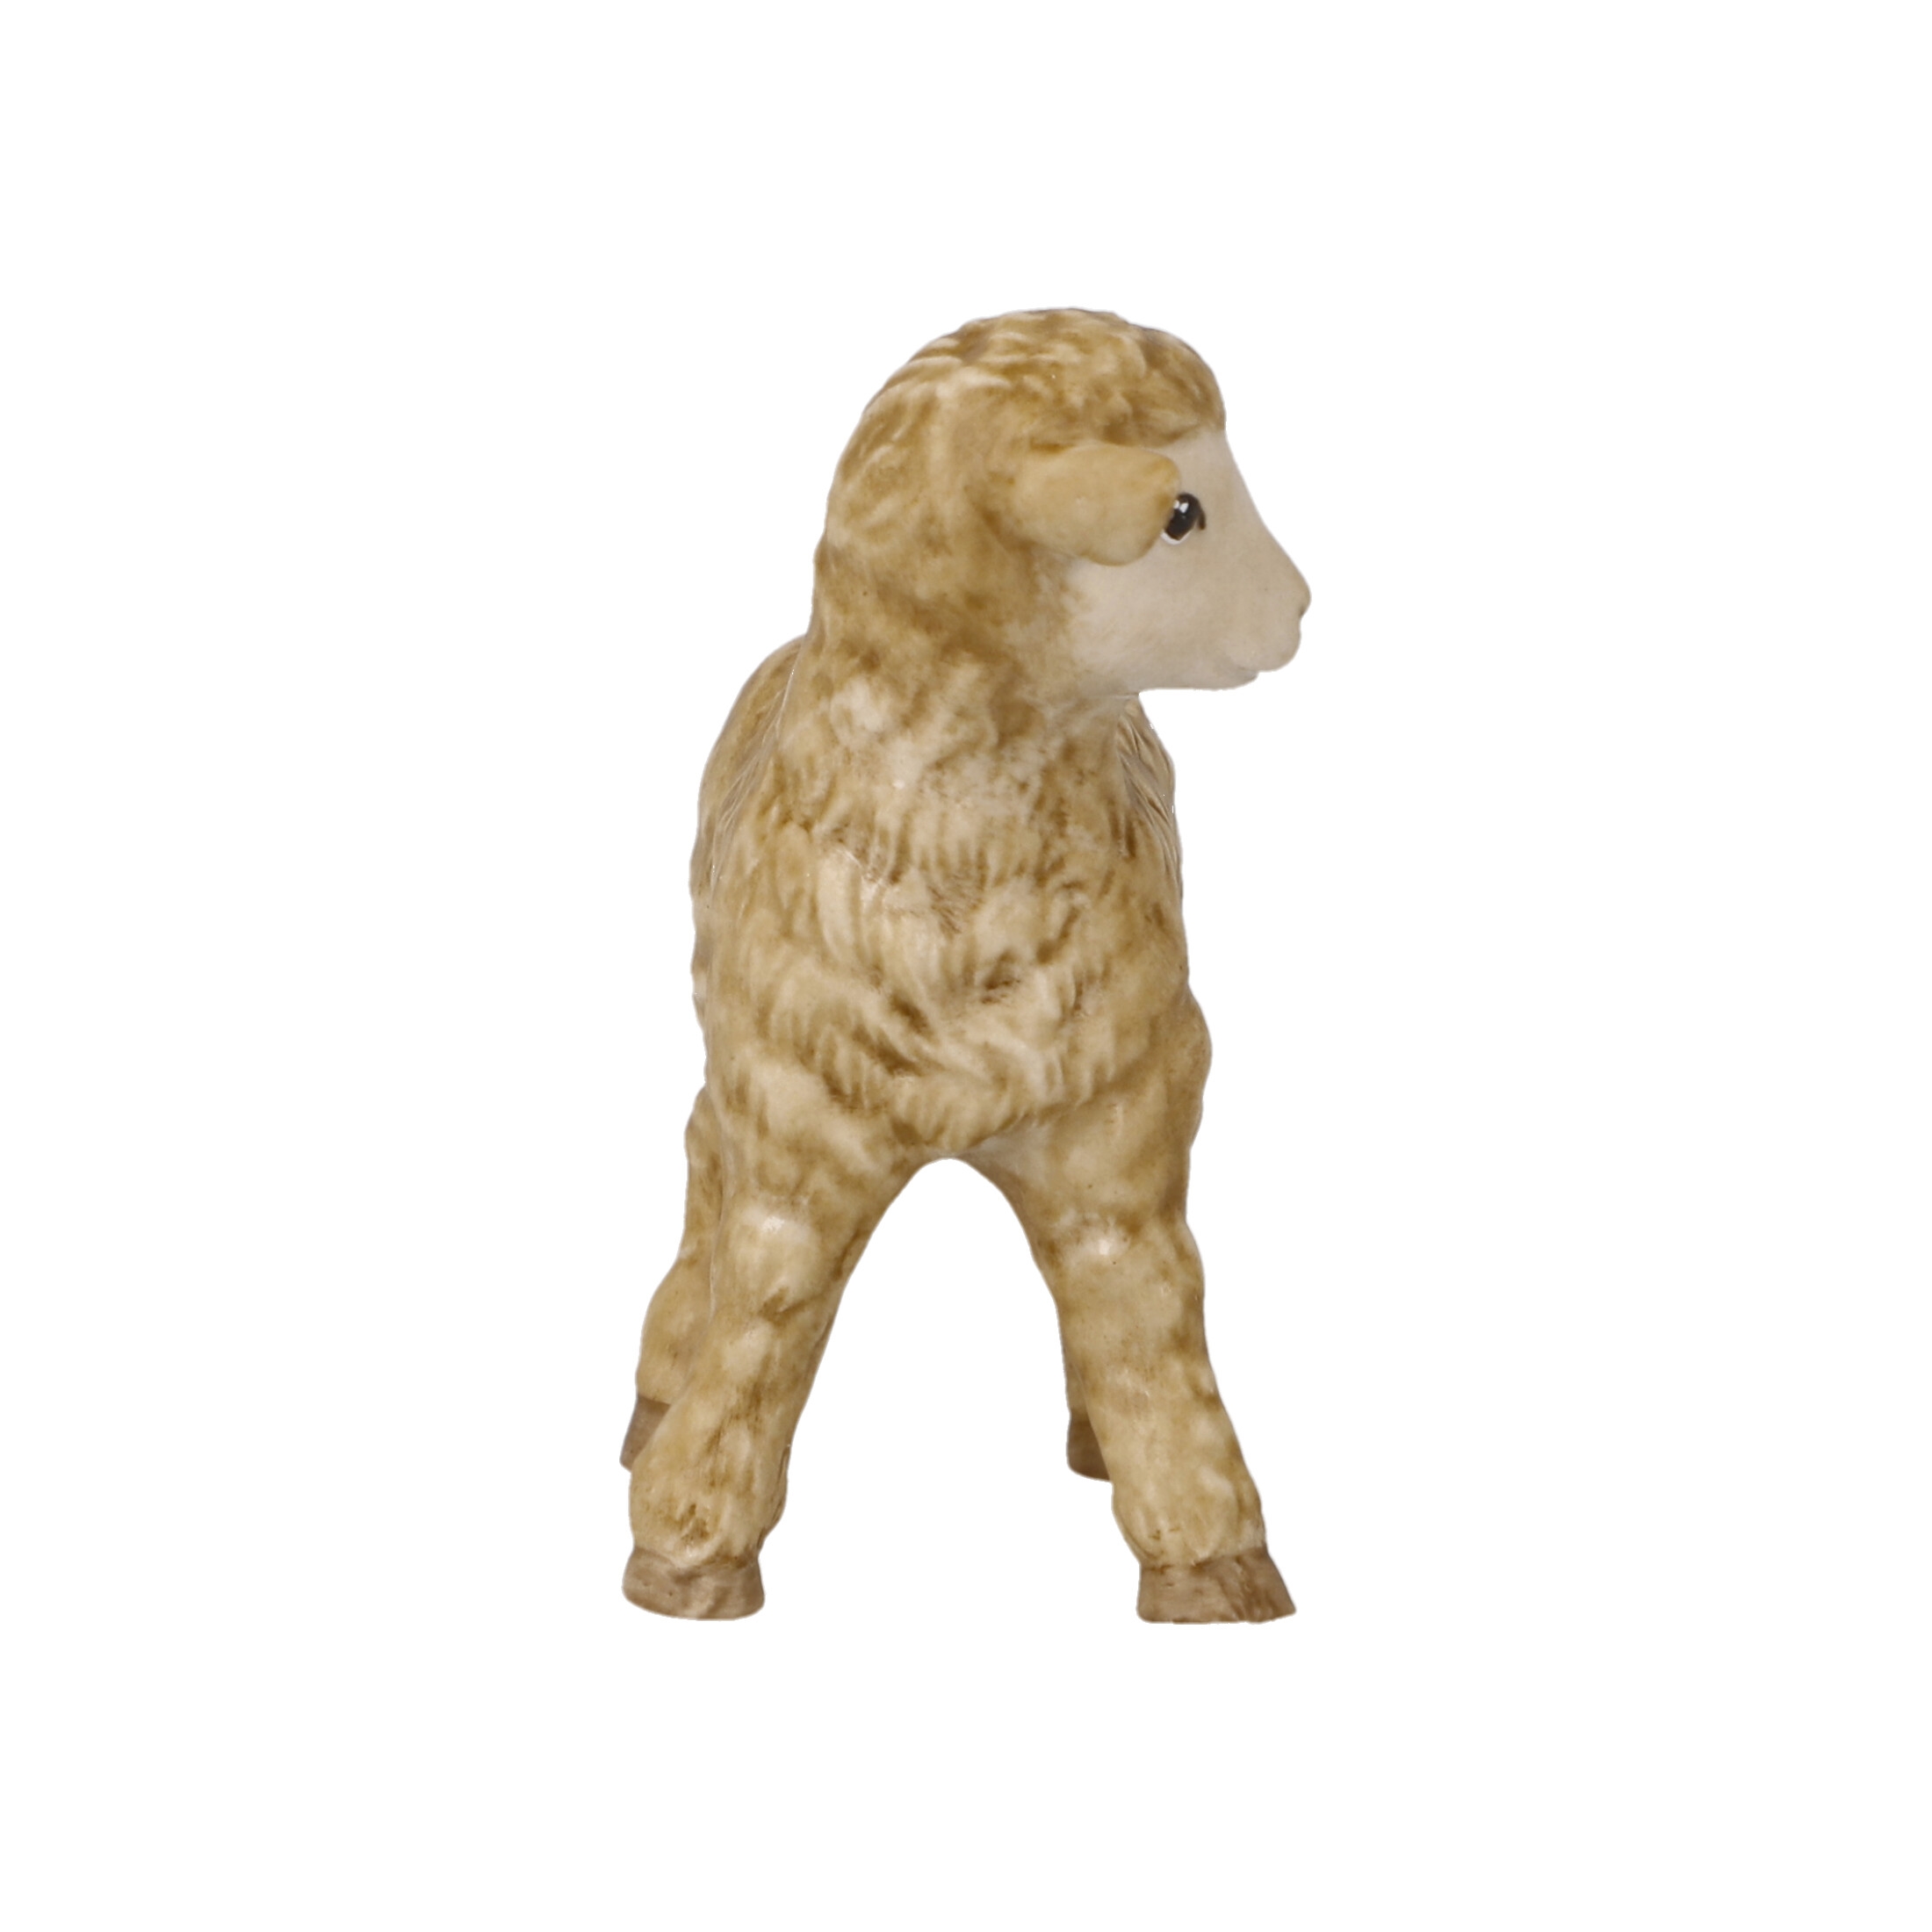 Dekoralia.de - Porzellan Krippe Goebel Tier Schaf Krippenfigur